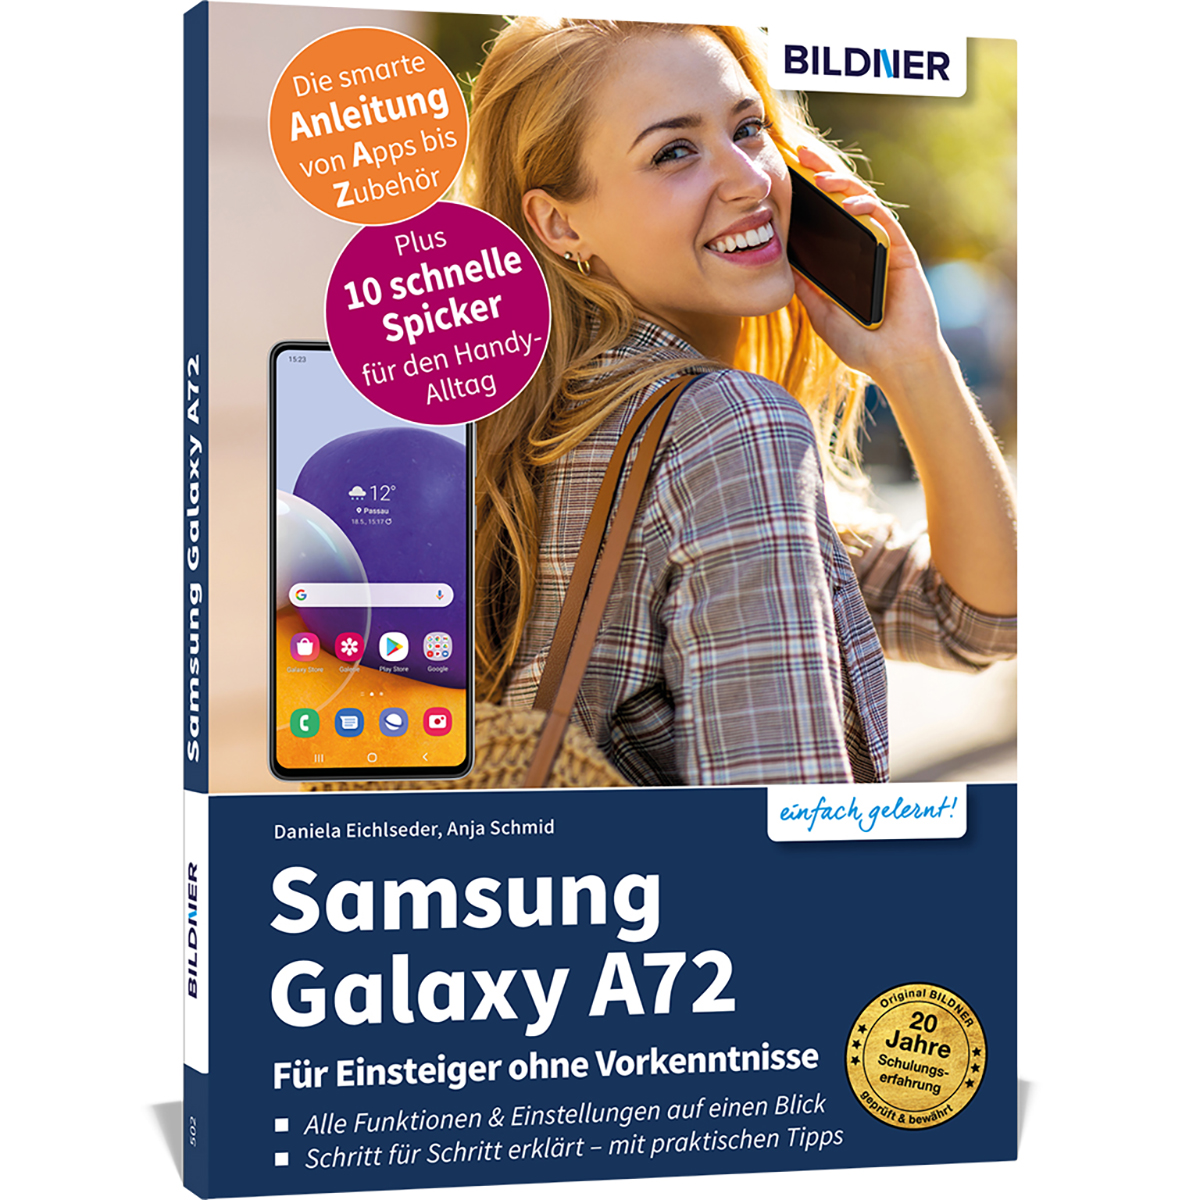 Samsung Galaxy A72 Für Vorkenntnisse ohne Einsteiger 